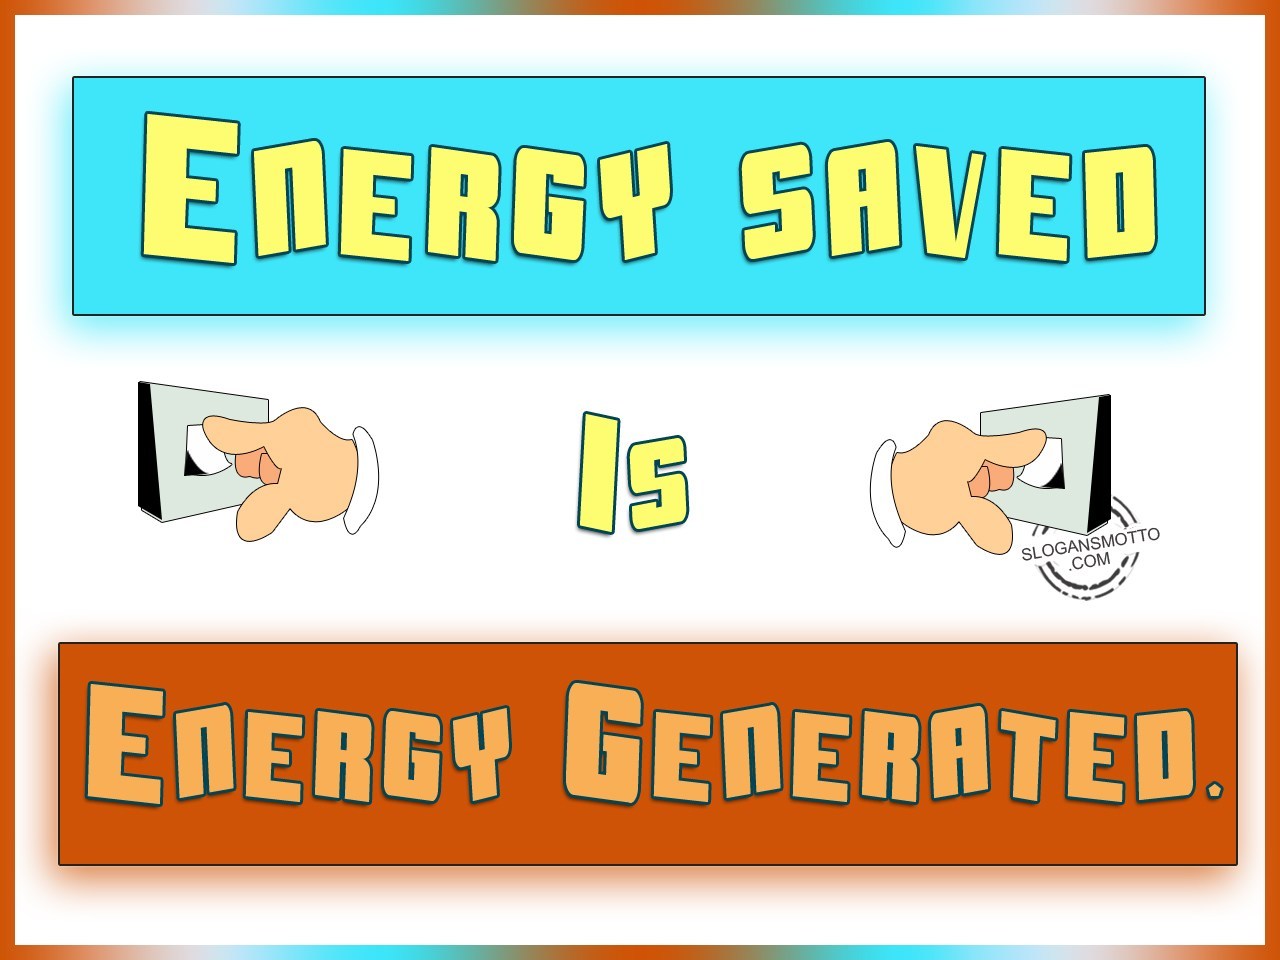 save energy slogans